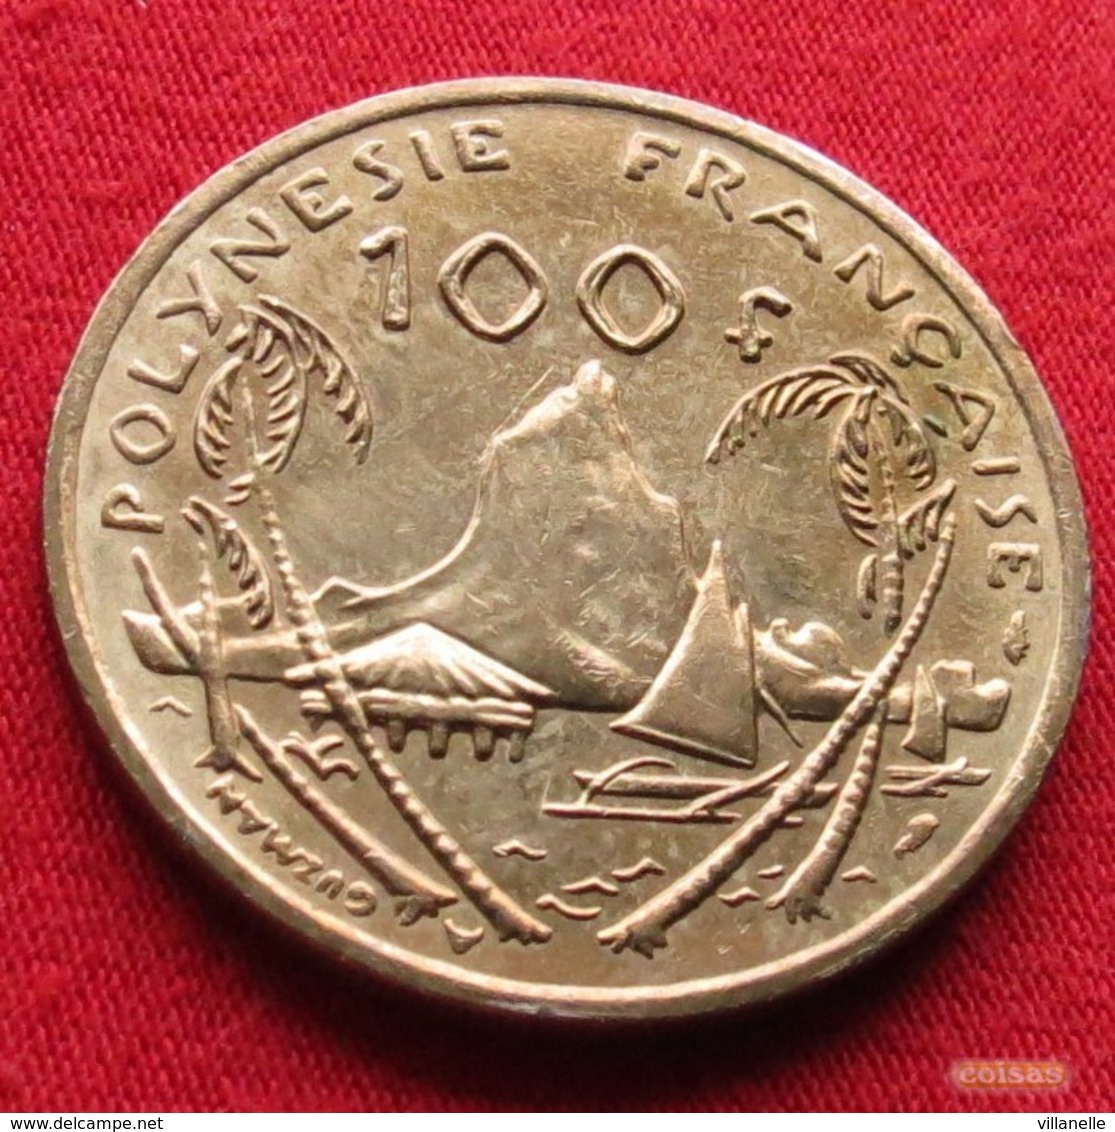 French Polynesia 100 Francs 1992 KM# 14 Polynesie Polinesia - Polynésie Française